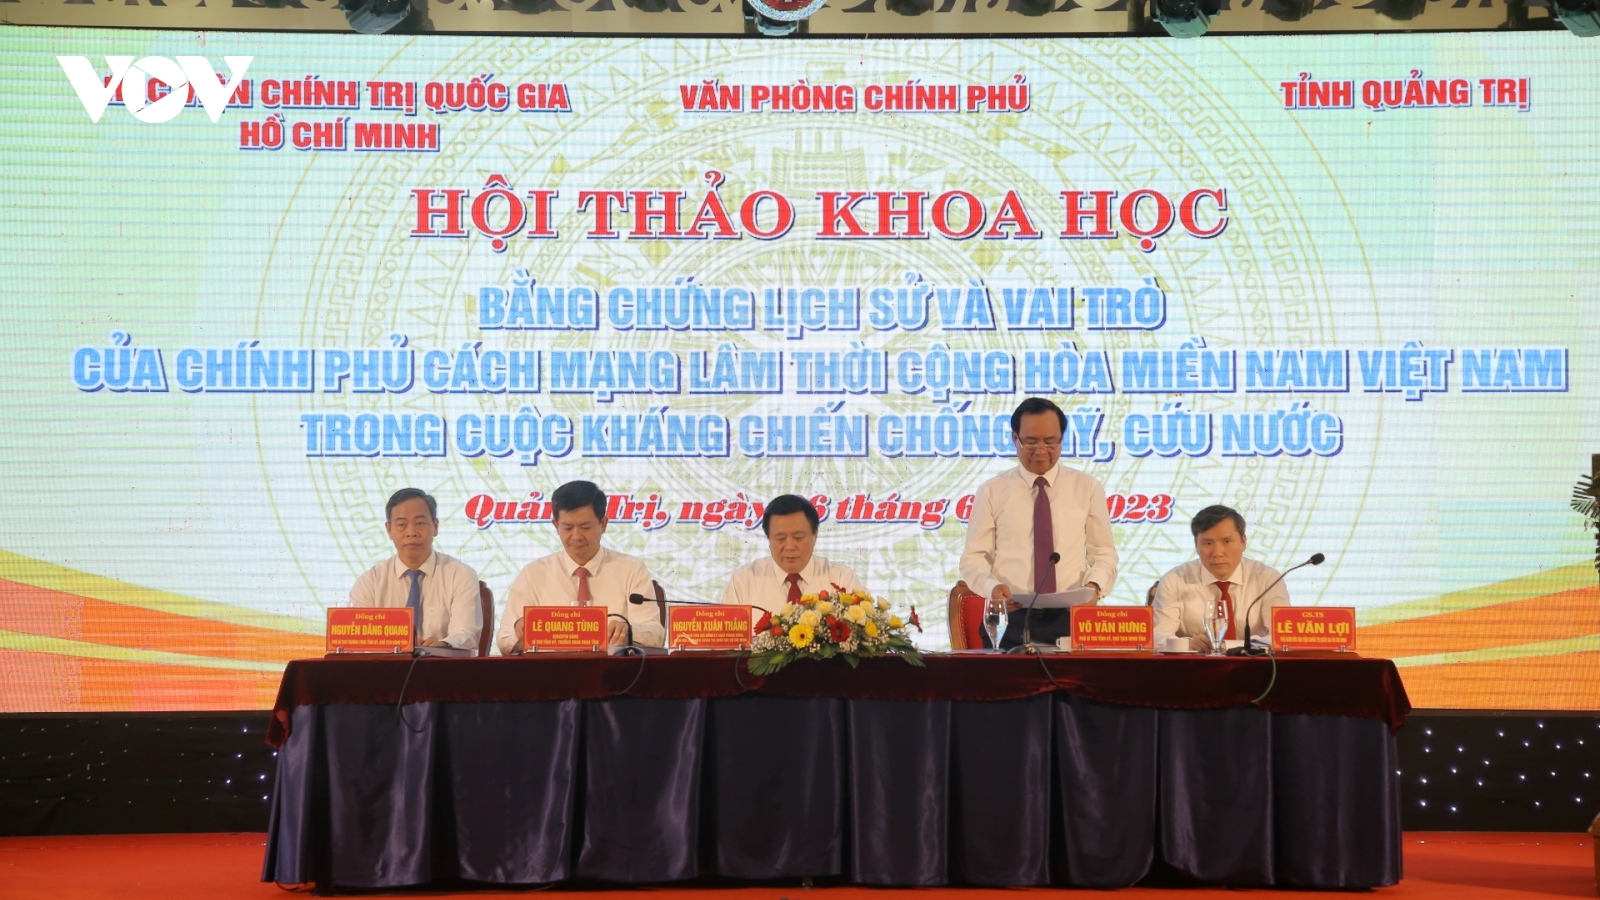 Hội thảo khoa học về vai trò của Chính phủ CM lâm thời Cộng hòa miền Nam Việt Nam